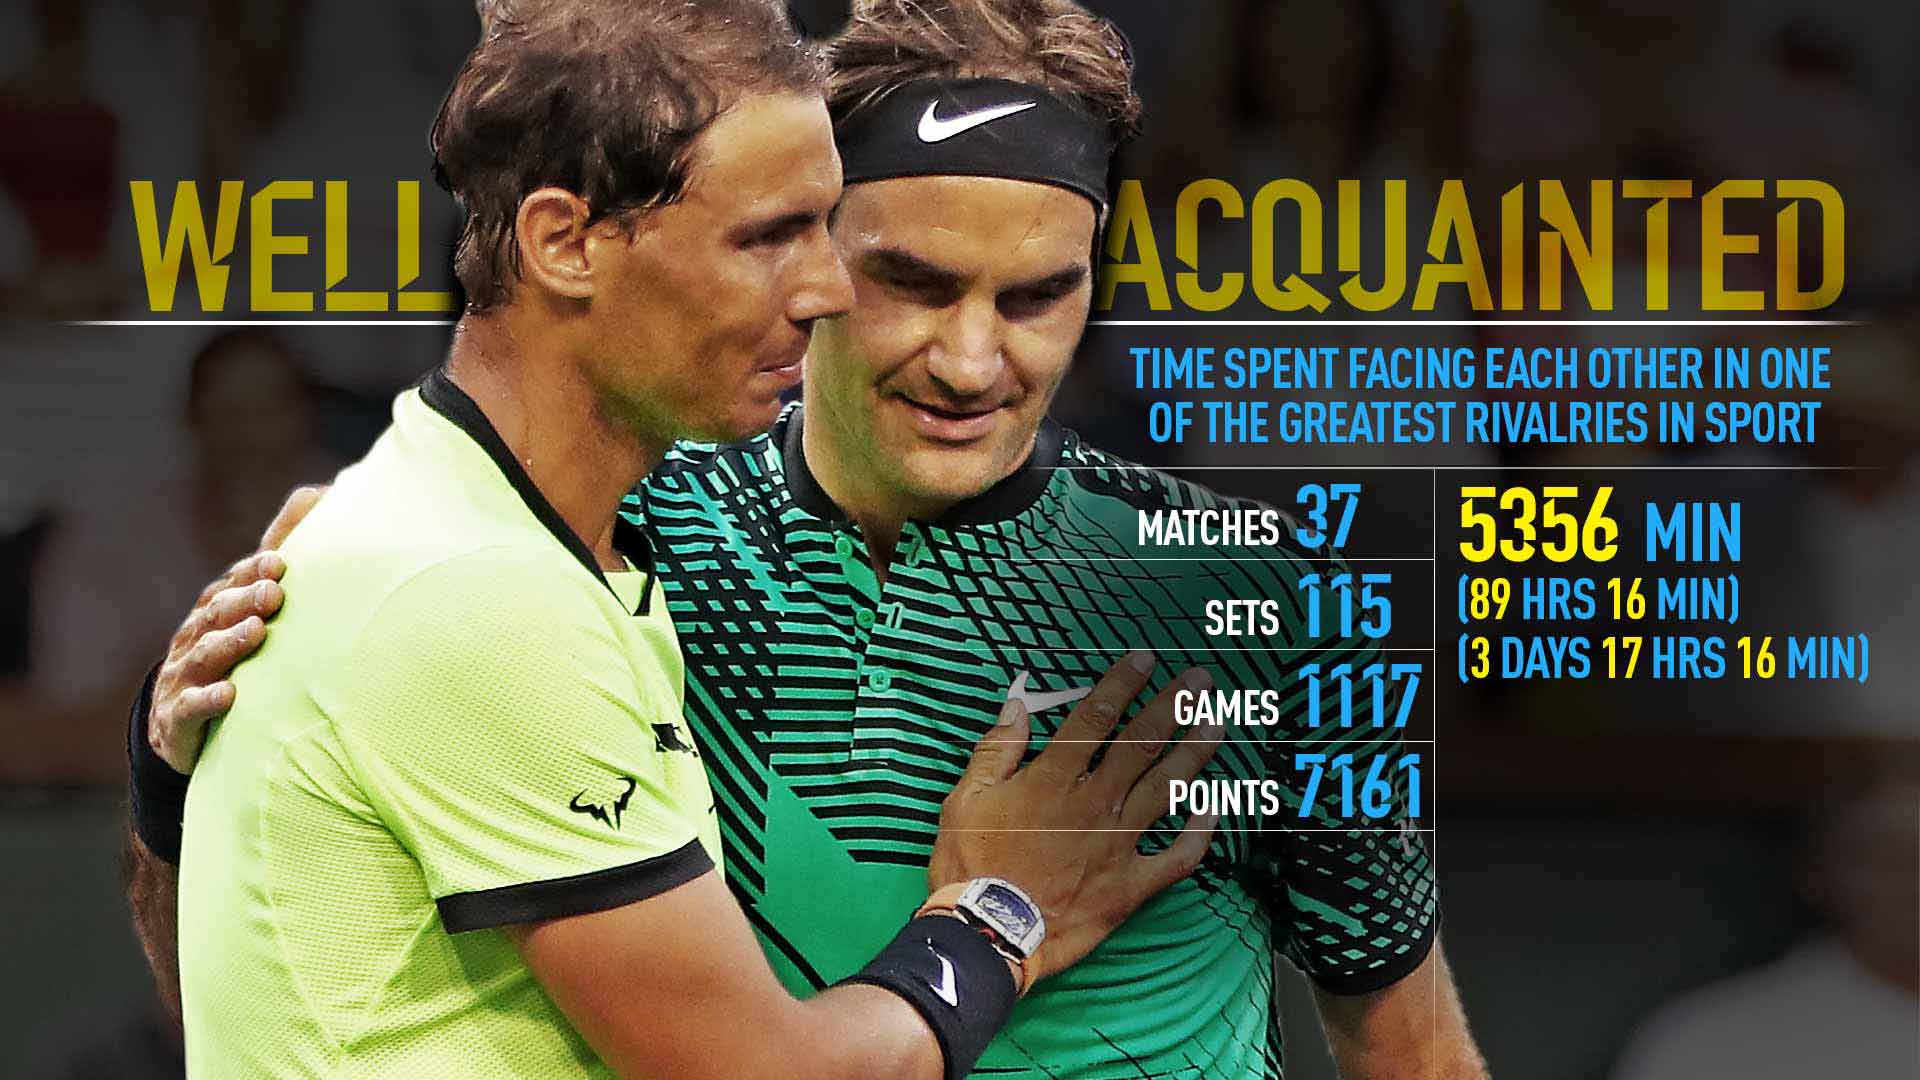 Статистиката: Федерер и Надал са разиграли помежду си 7161 точки (видео)